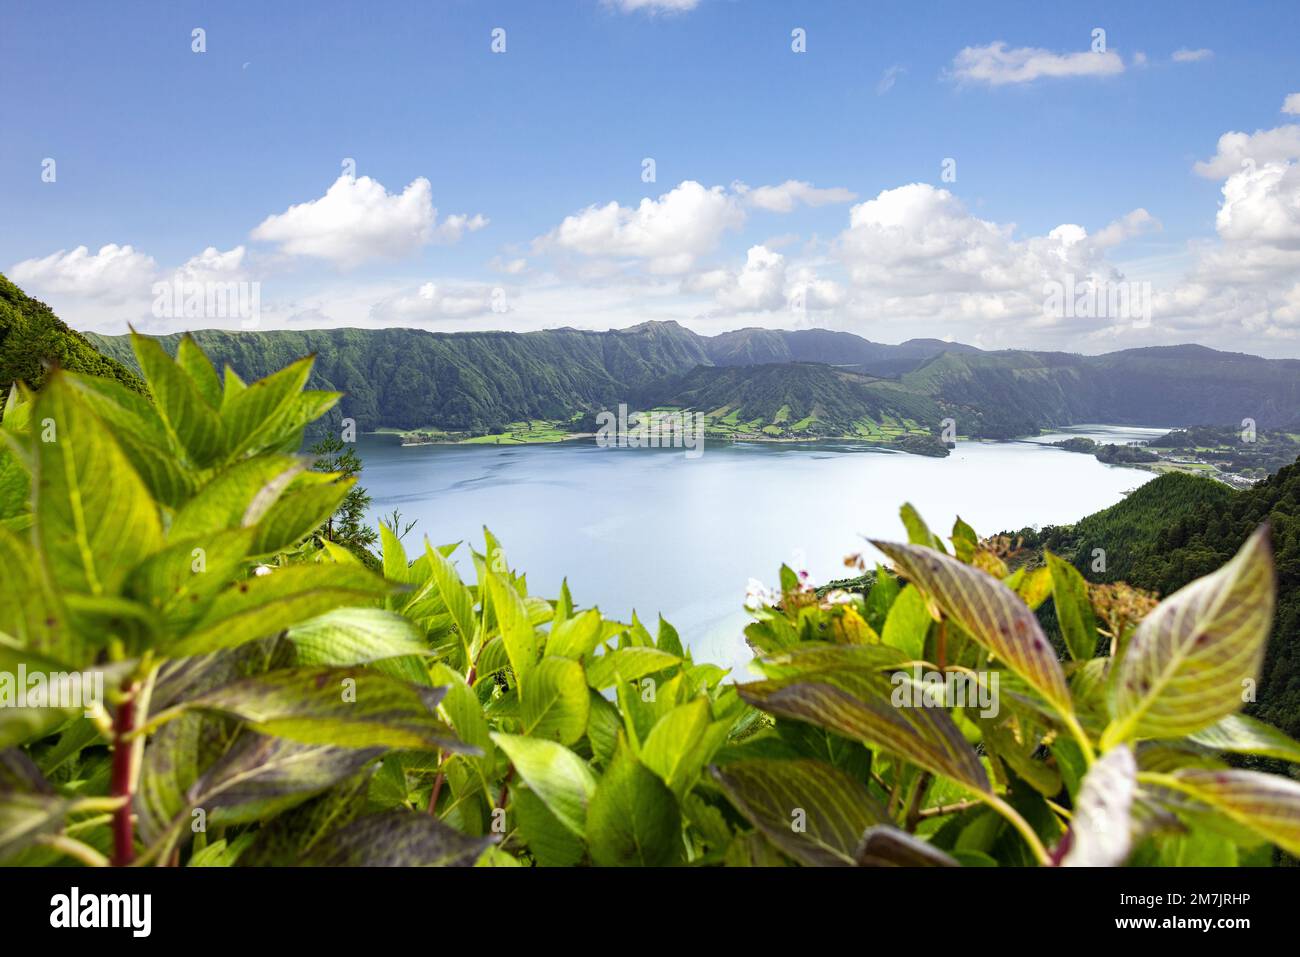 Vista de la caldera en la isla de São Miguel en las Azores con su naturaleza escénica Foto de stock